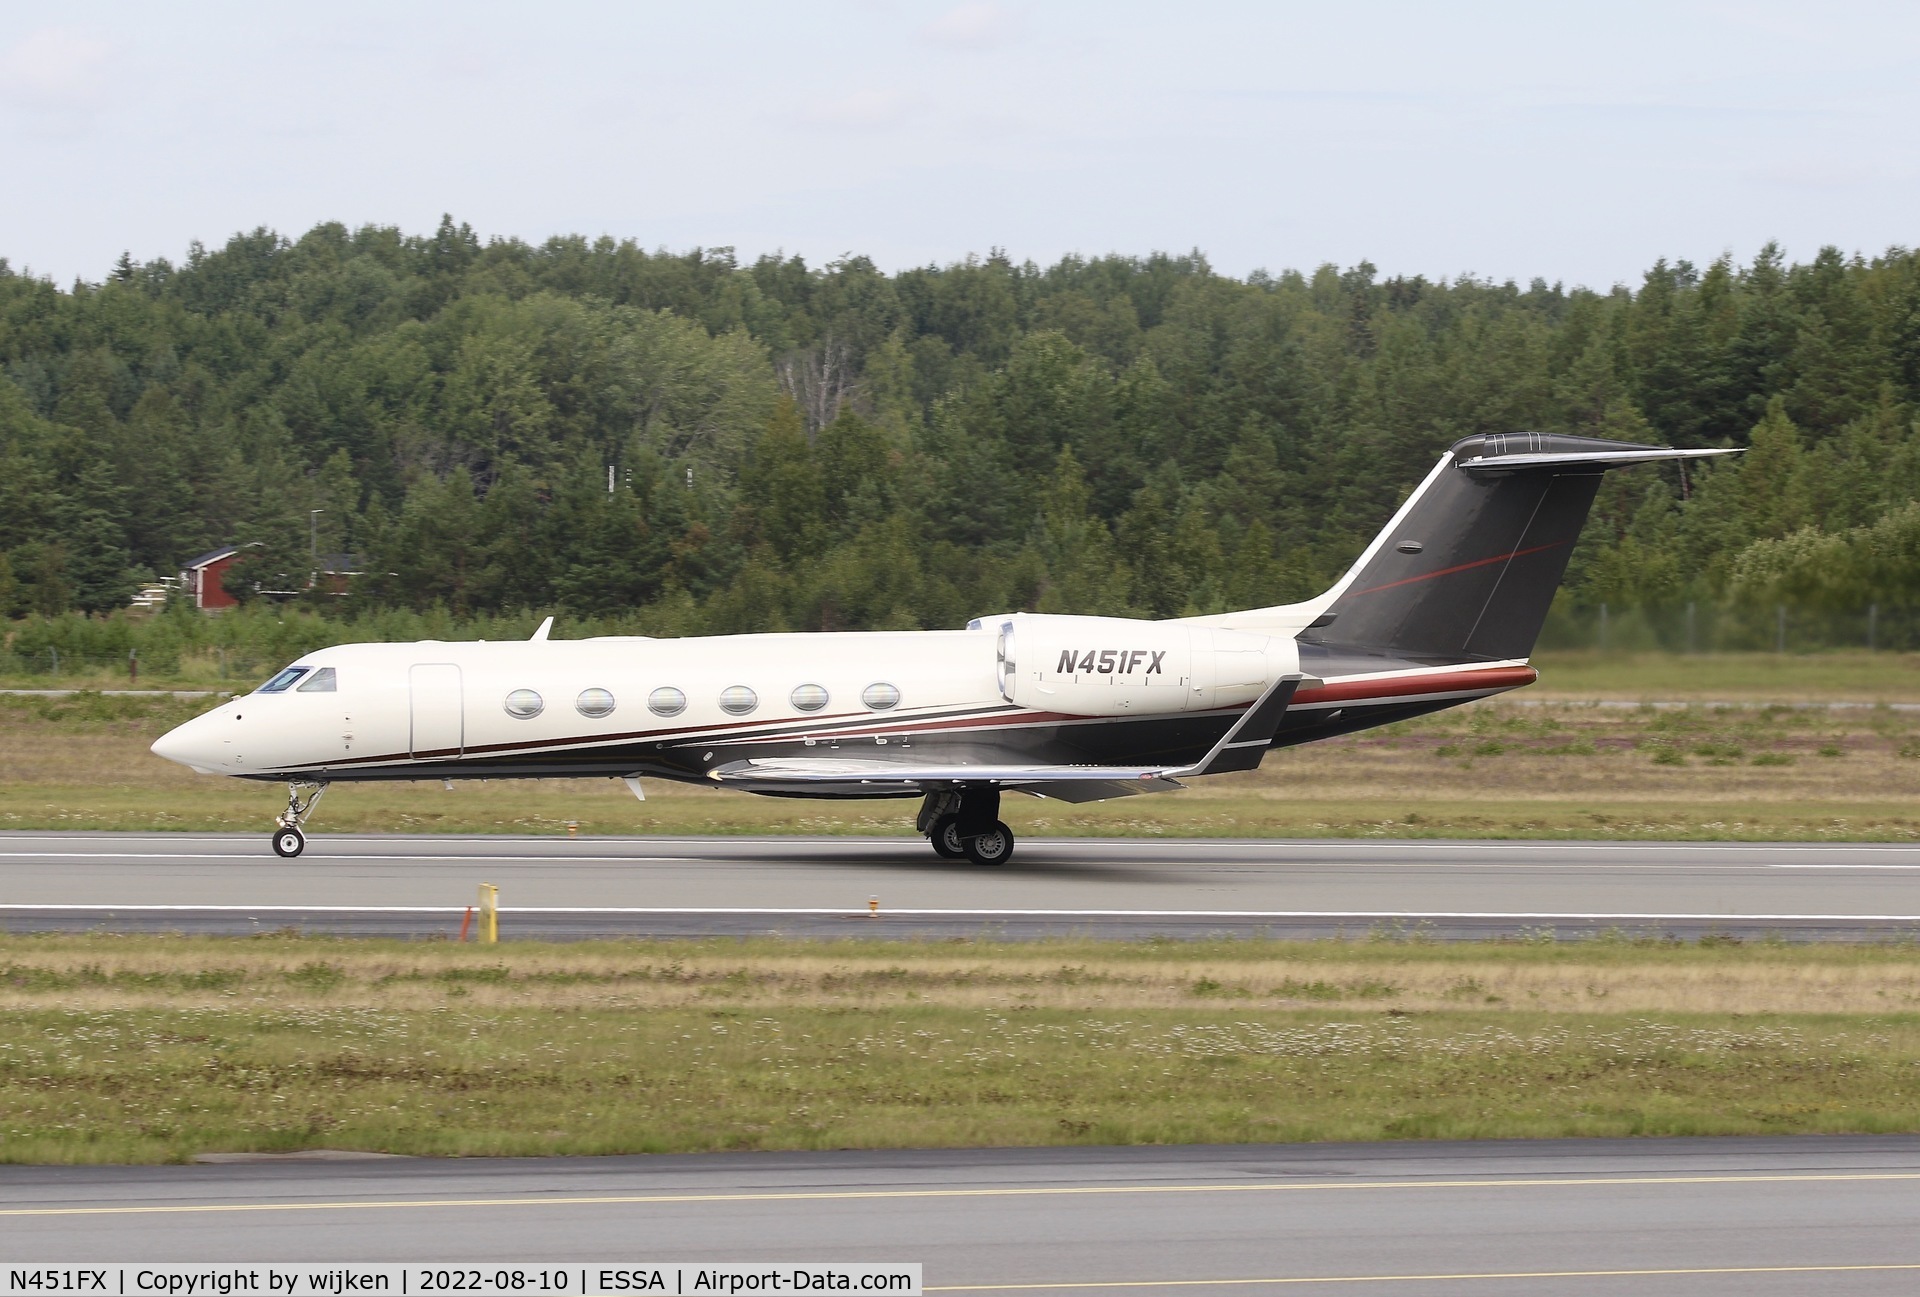 N451FX, 2015 Gulfstream Aerospace GIV-X (G450) C/N 4332, RWY 26